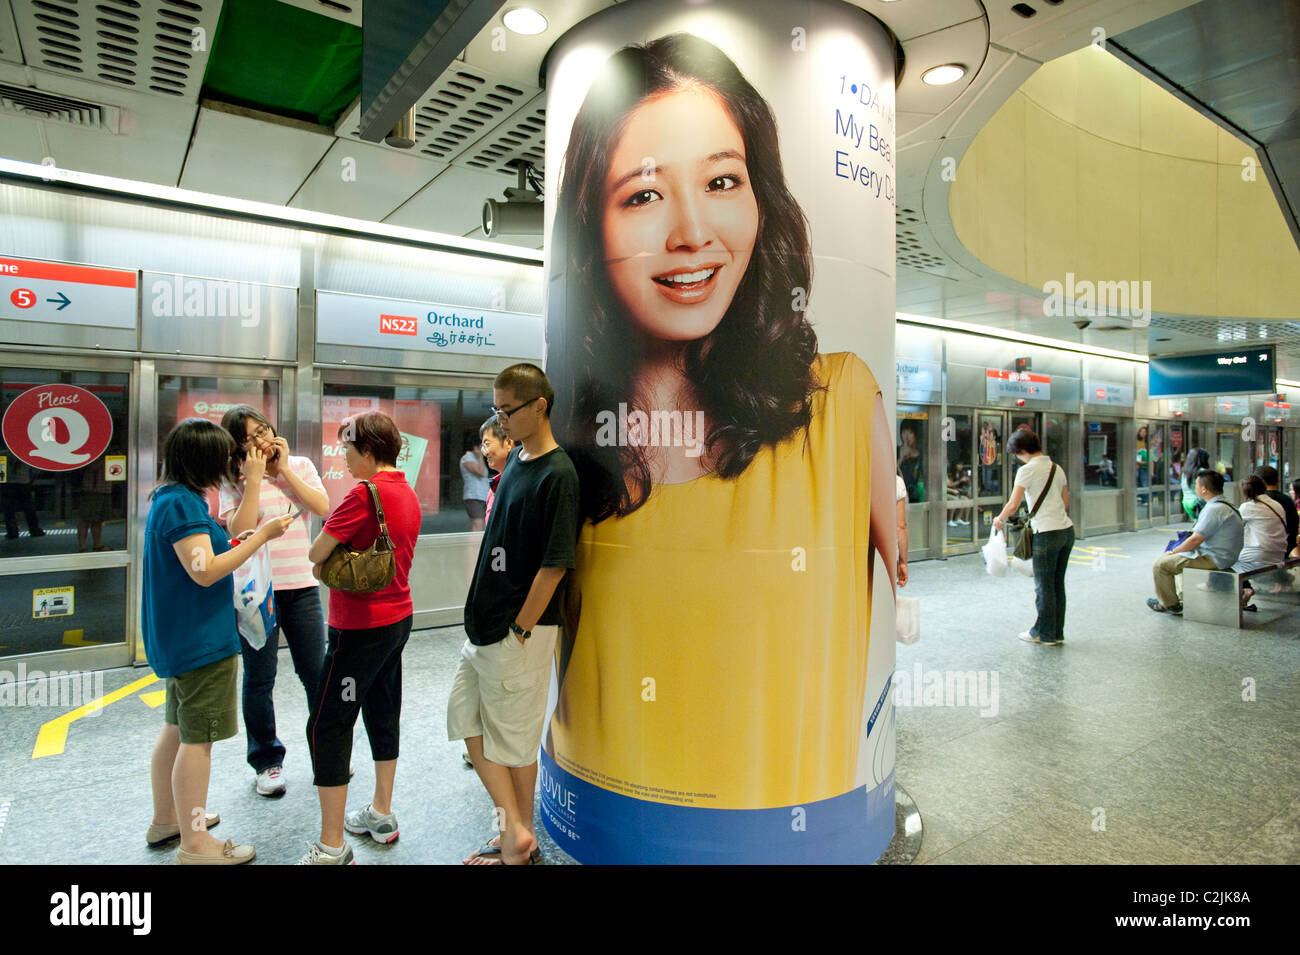 La pubblicità che colpisce in Singapore Mass Rapid Transit (MRT) sistema di metropolitana. Qui alla stazione Orchard sulla linea nord-sud Foto Stock